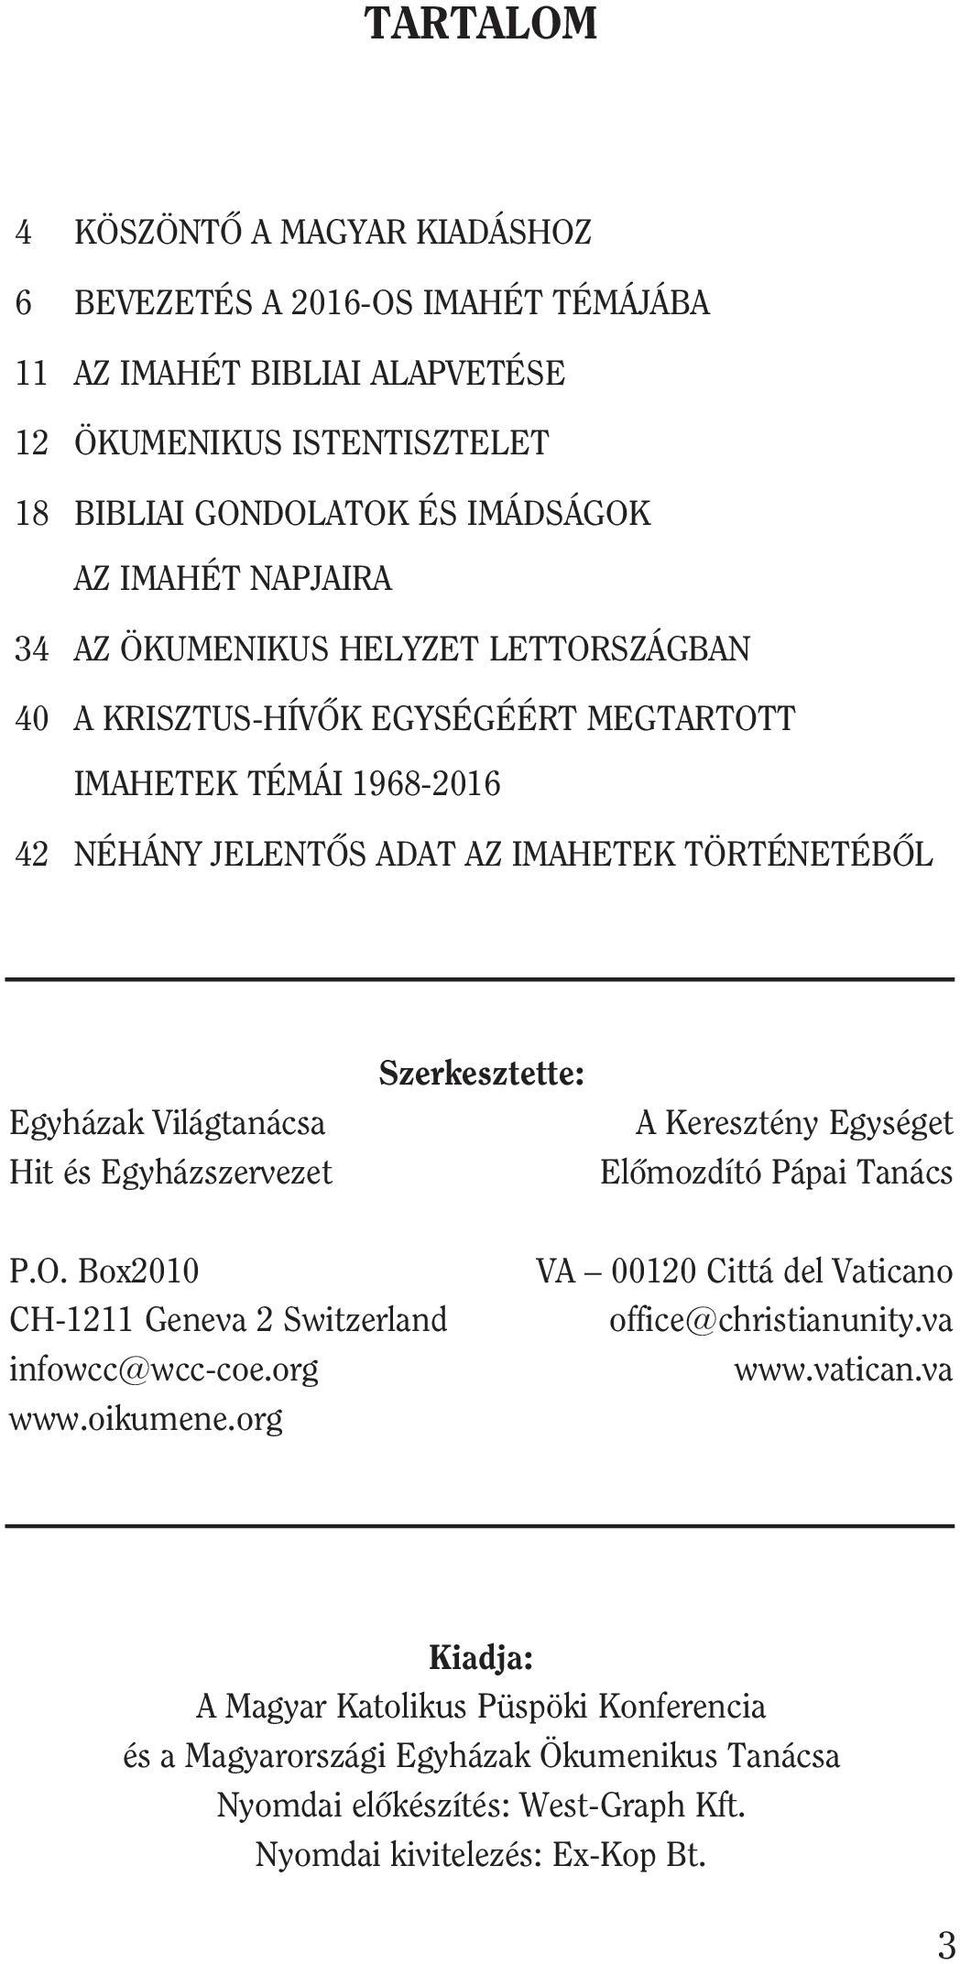 és Egyházszervezet Szerkesztette: A Keresztény Egységet Elõmozdító Pápai Tanács P.O. Box2010 CH-1211 Geneva 2 Switzerland infowcc@wcc-coe.org www.oikumene.